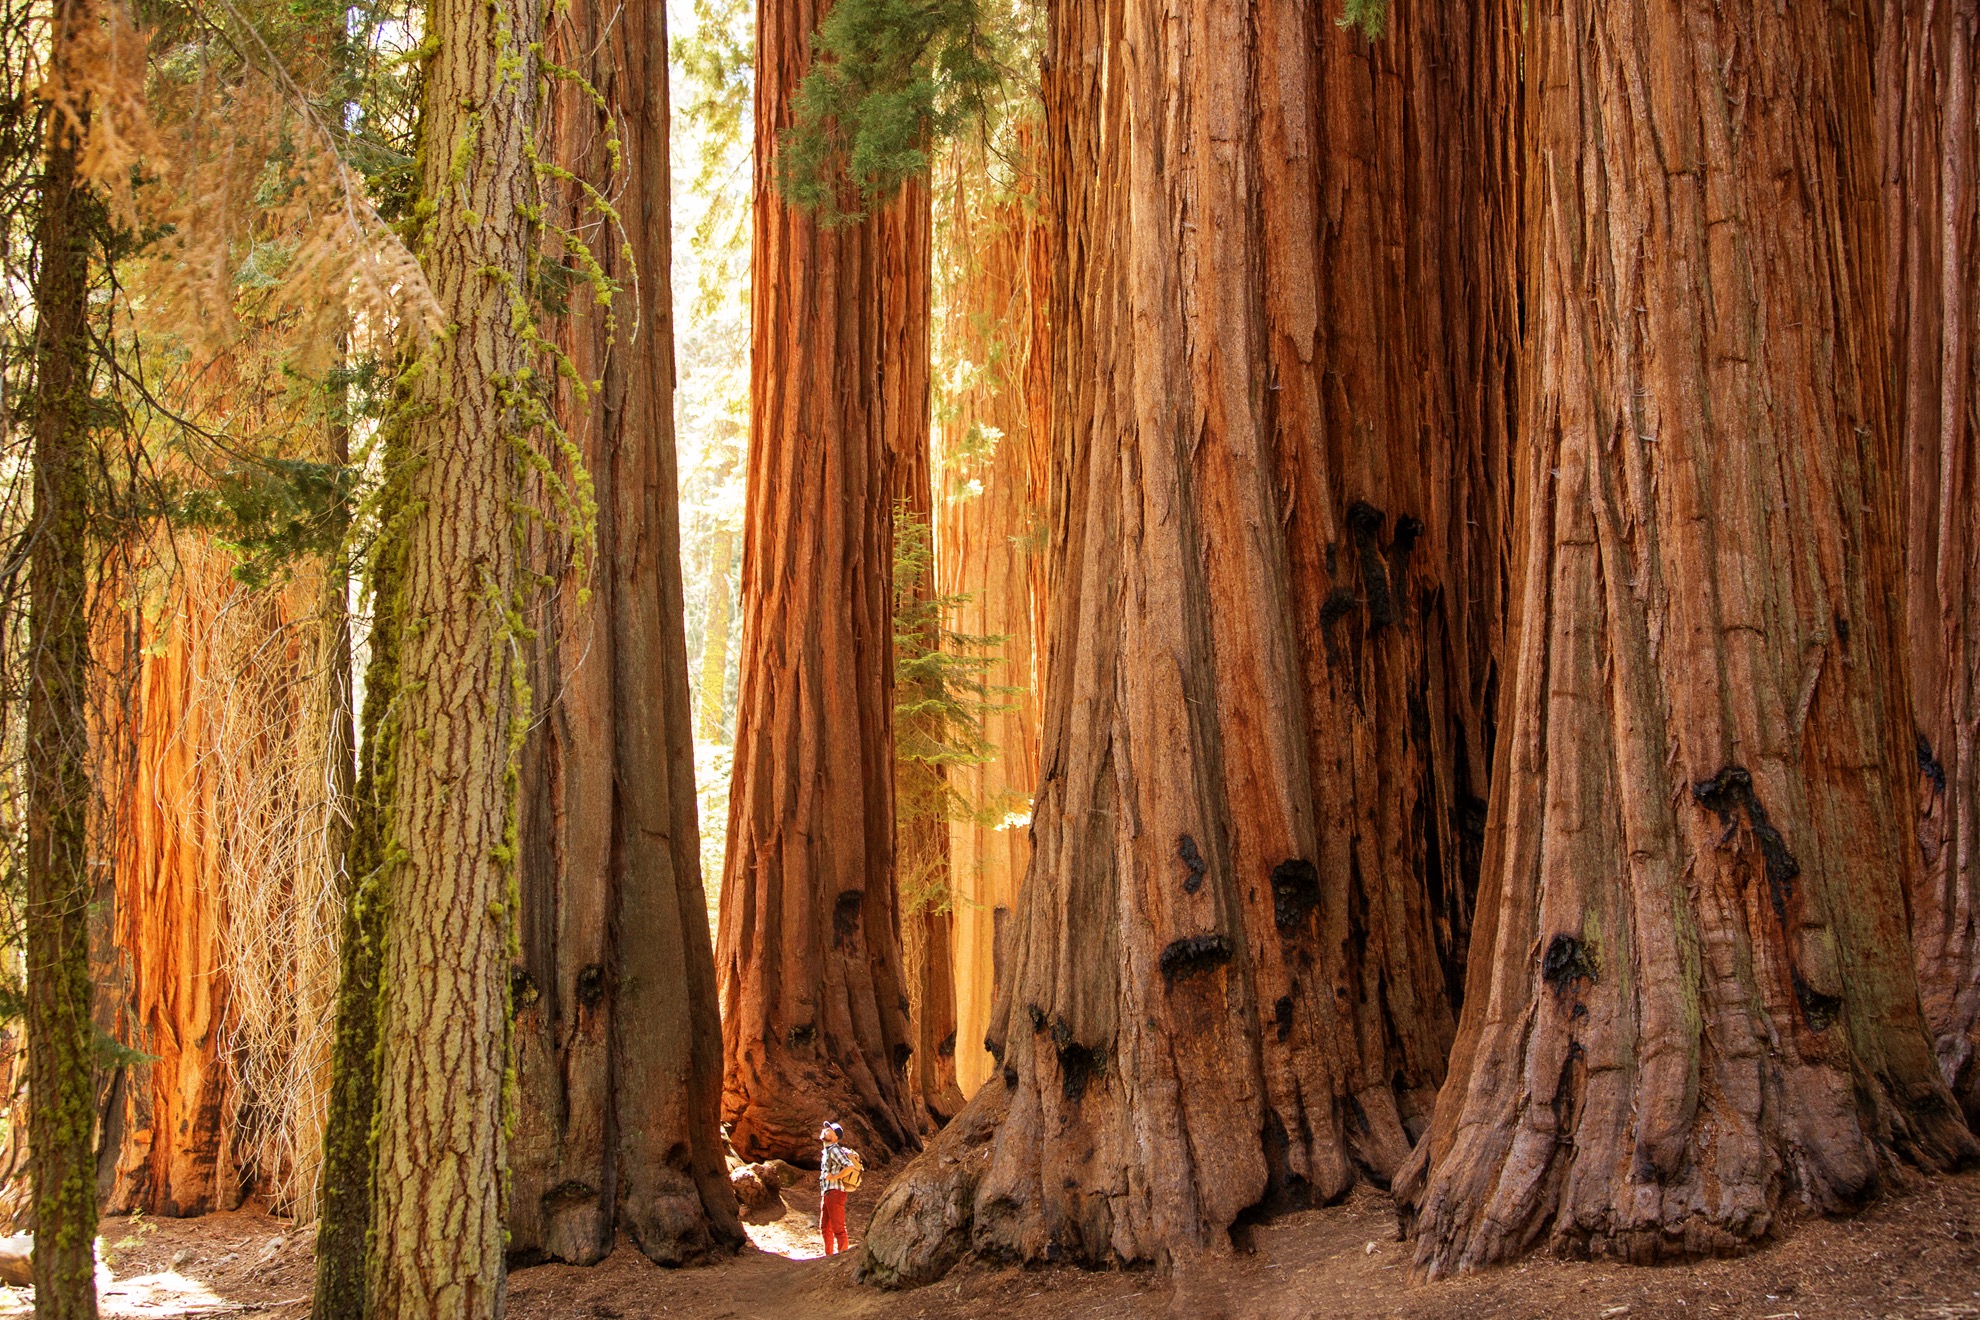 Visitar Mariposa Grove de California: 9 cosas que saber - 7